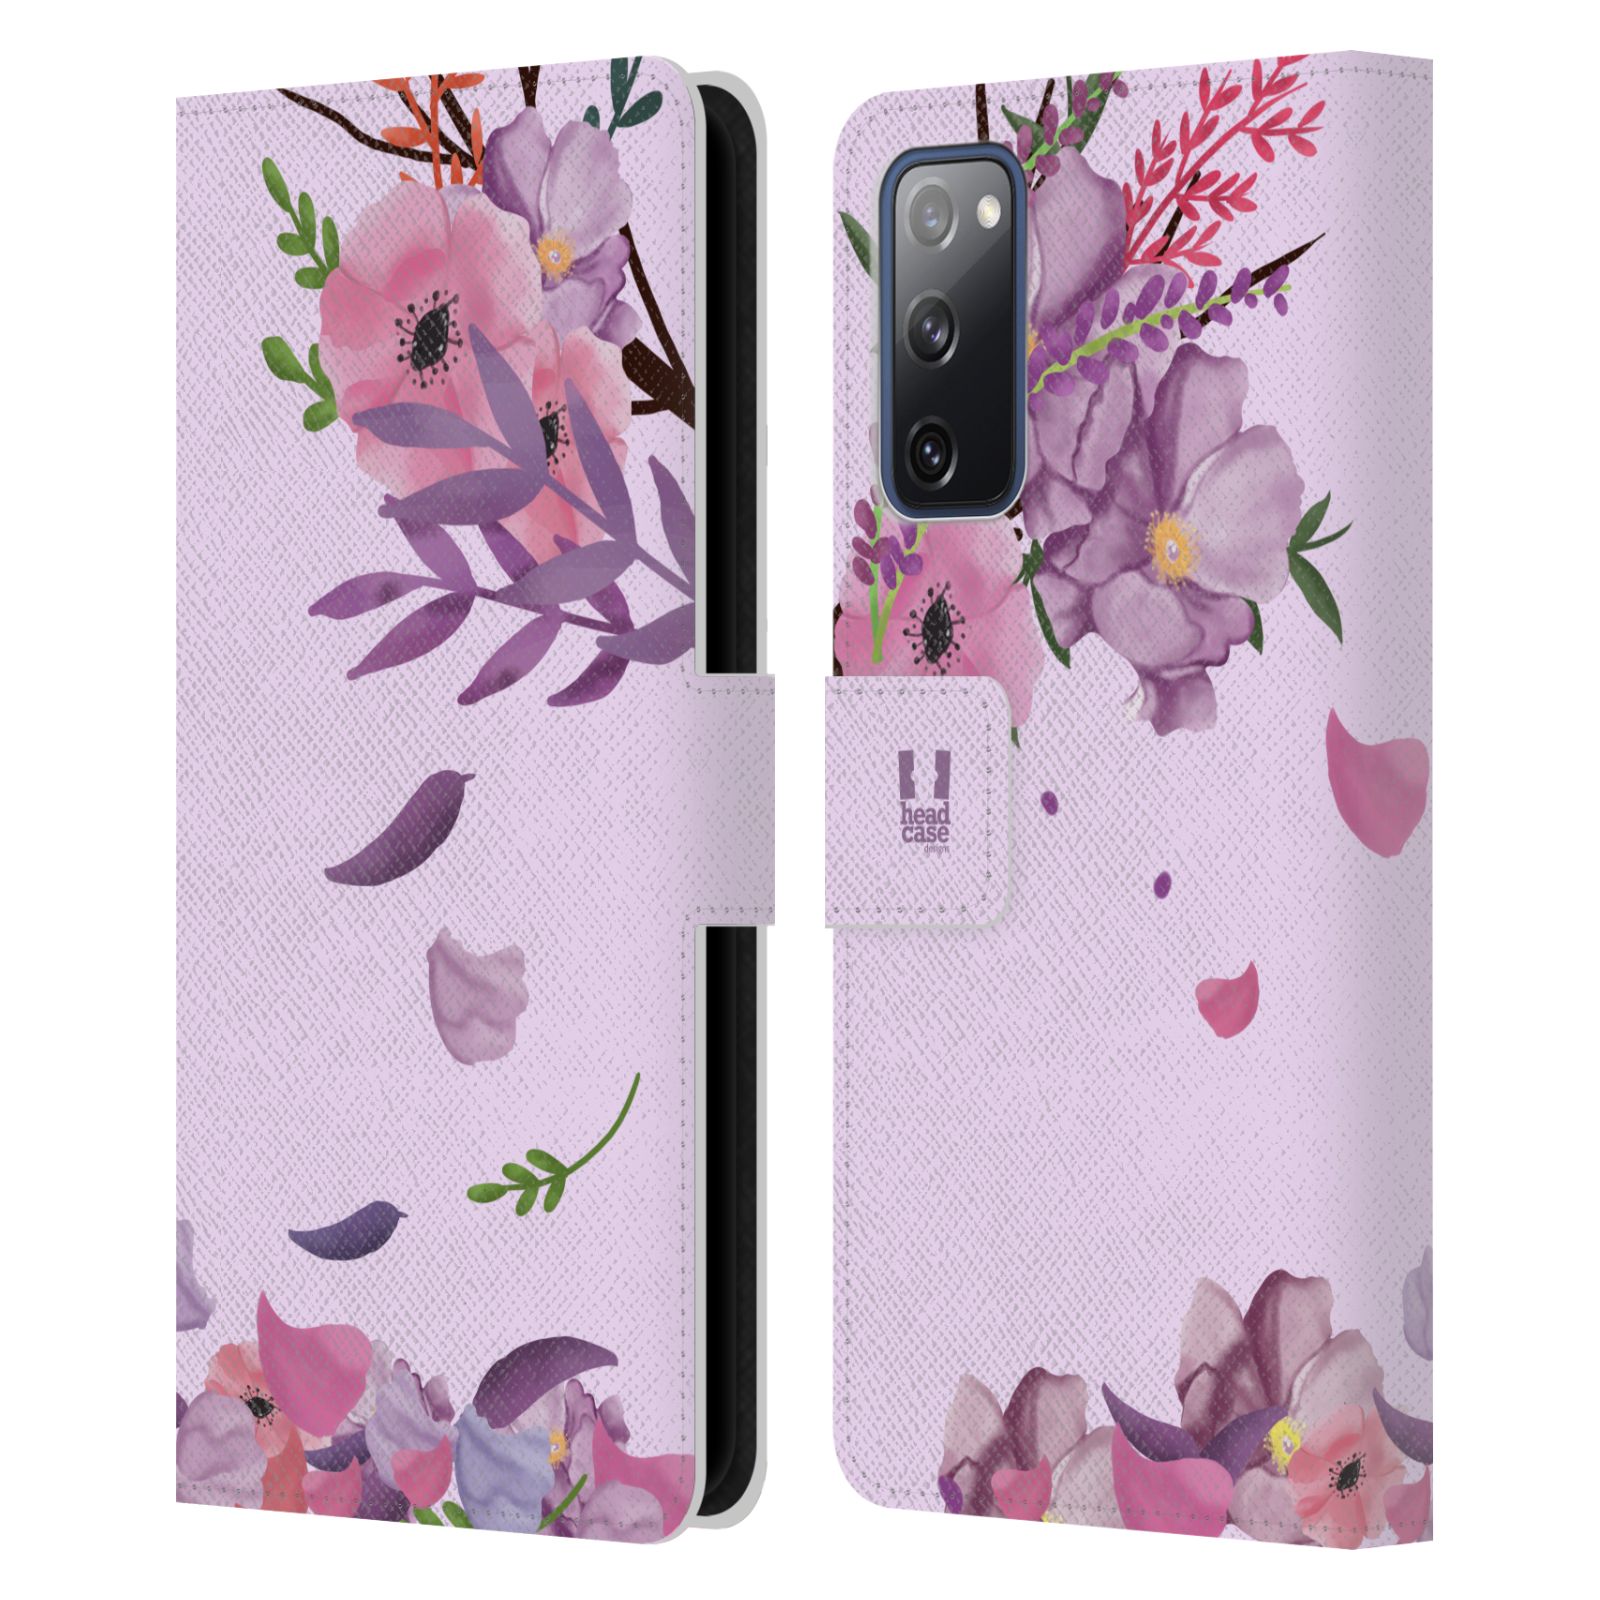 Pouzdro na mobil Samsung Galaxy S20 FE / S20 FE 5G  - HEAD CASE - Rozkvetlé růže a listy růžová